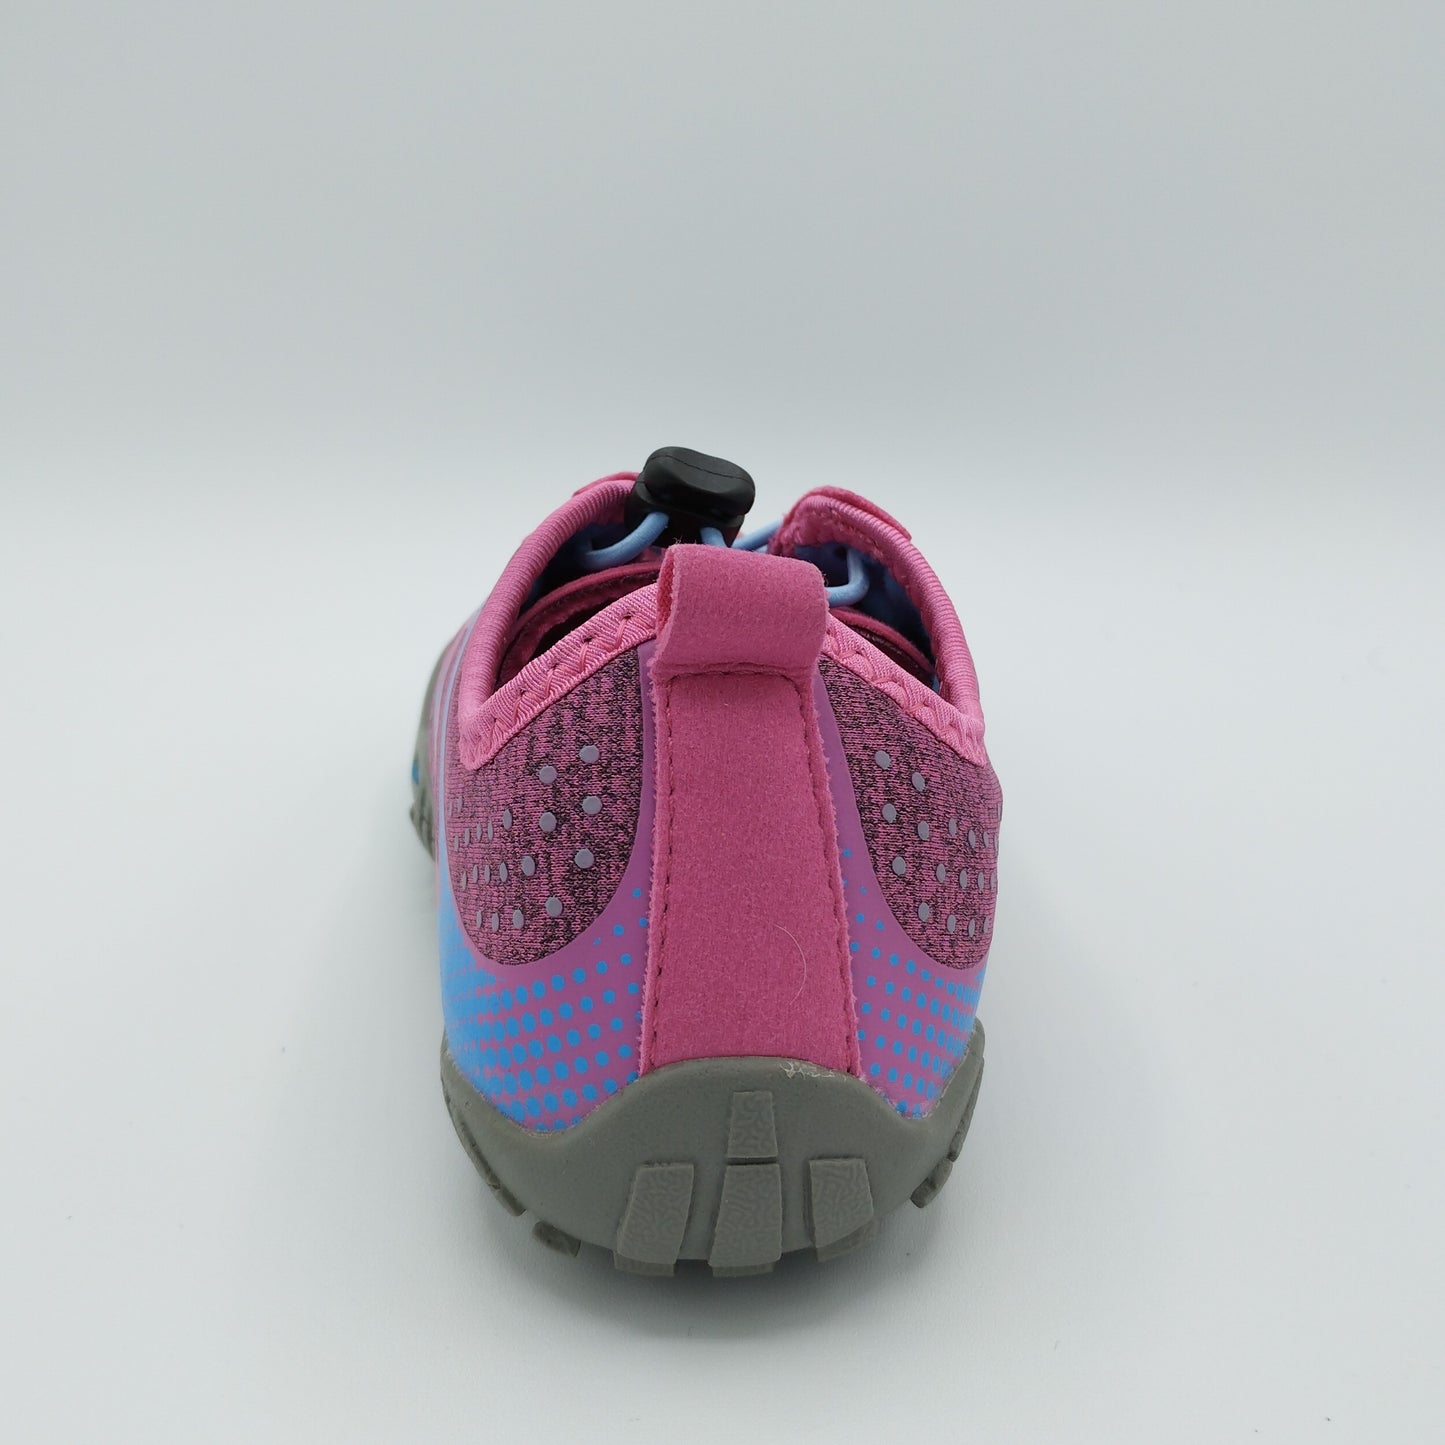 Saguaro Shoes Spain - Instagram: ¡Prepárate para enamorarte de las 𝗦𝗔𝗚𝗨𝗔𝗥𝗢  𝗡𝗶ñ𝗼𝘀 𝗖𝗵𝗮𝘀𝗲𝗿 𝗙𝗿𝗲𝗲Ⅰ! 💕 Estas zapatillas descalzas ya están  disponibles en los colores más soñados: rosa claro, morado claro, azul cielo